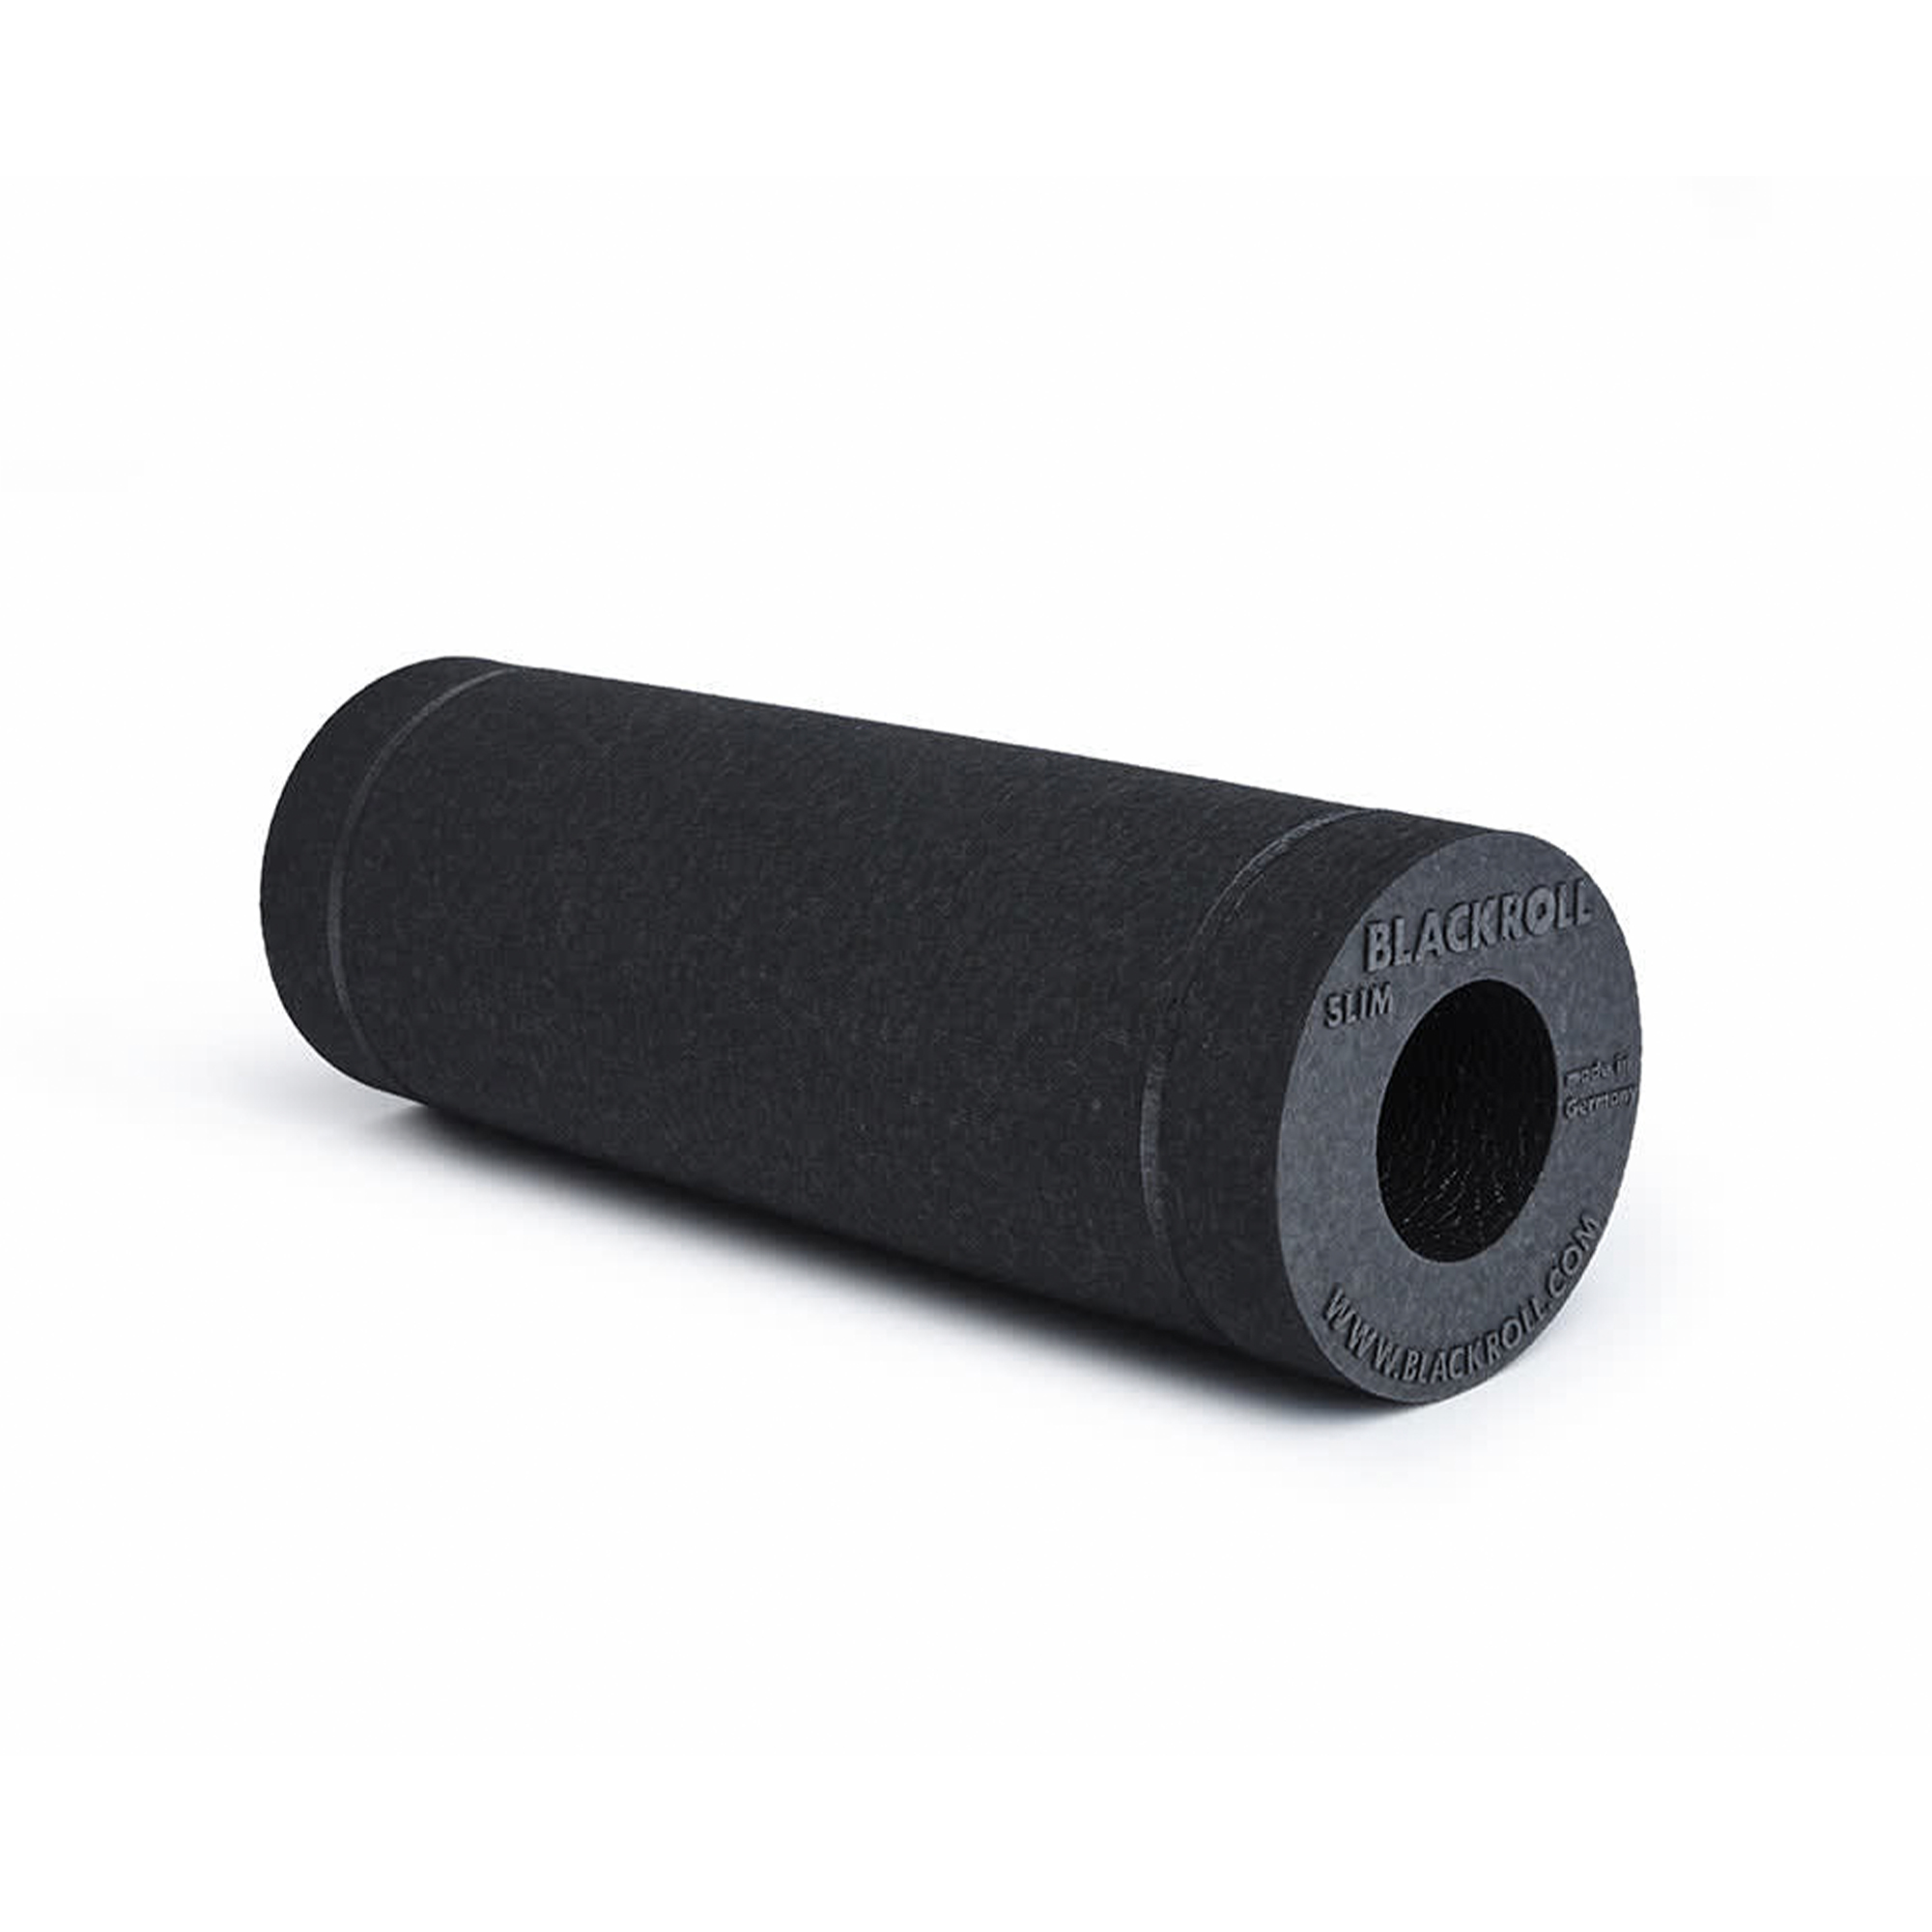 Blackroll Slim Foam Roller - længde: 30 cm - Ø10 cm